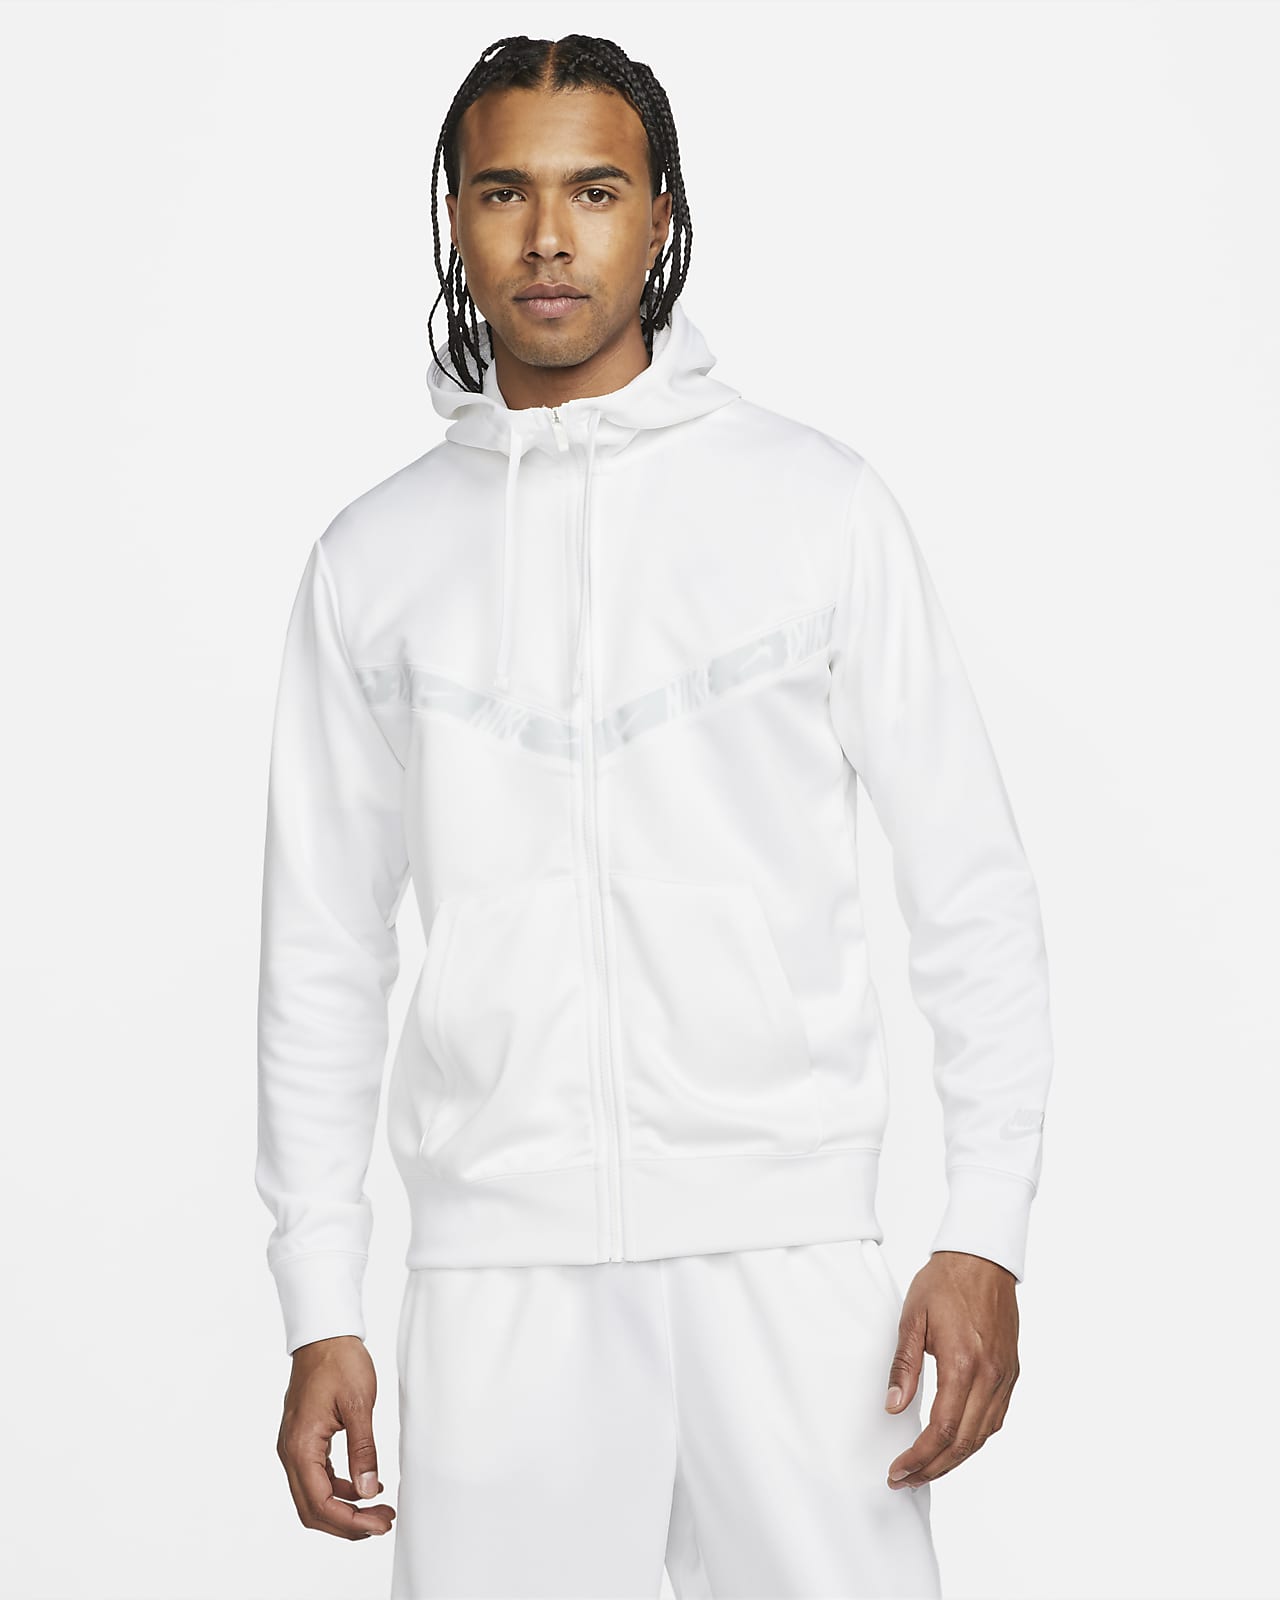 Pánská mikina Nike Sportswear s kapucí a zipem po celé délce